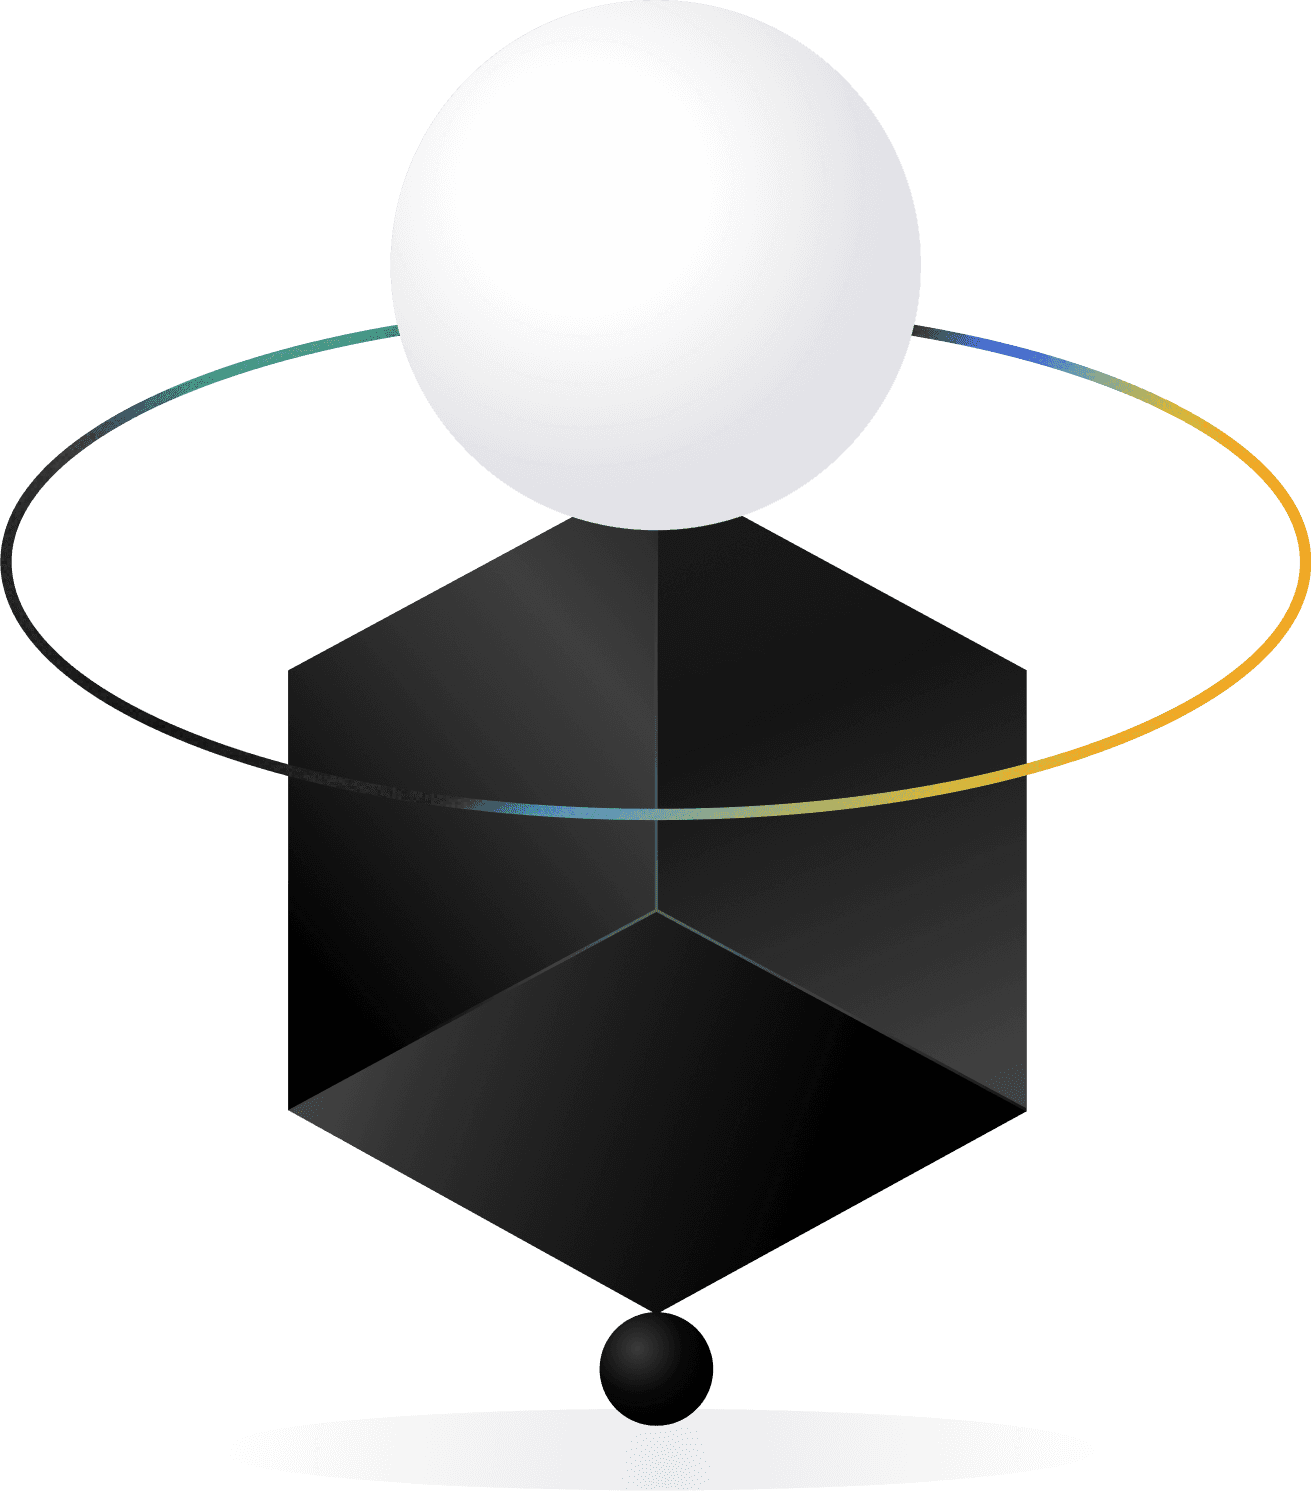 Graphique abstrait avec un cube sombre et une sphère claire pour briser une étude de cas UX.